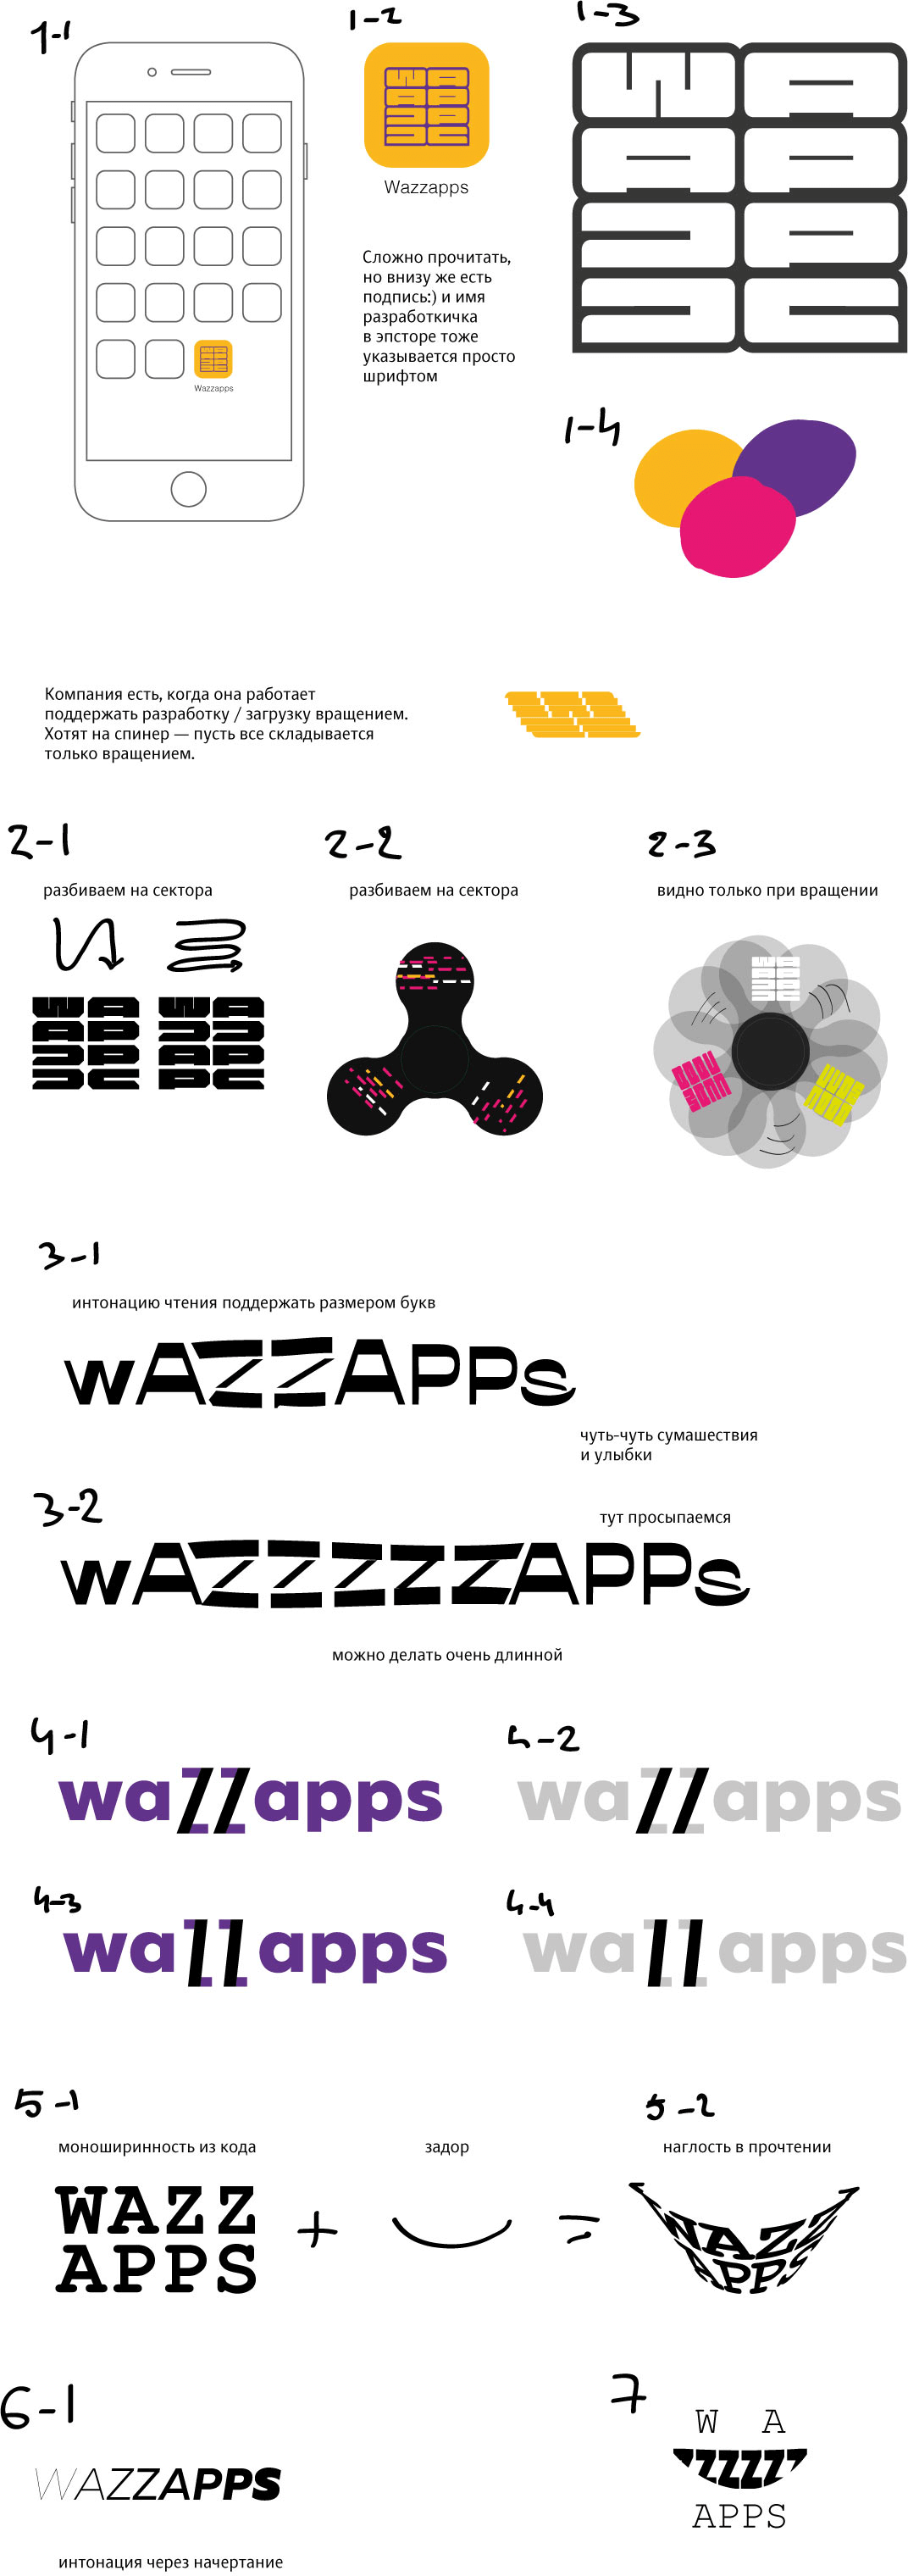 wazzaps process 01